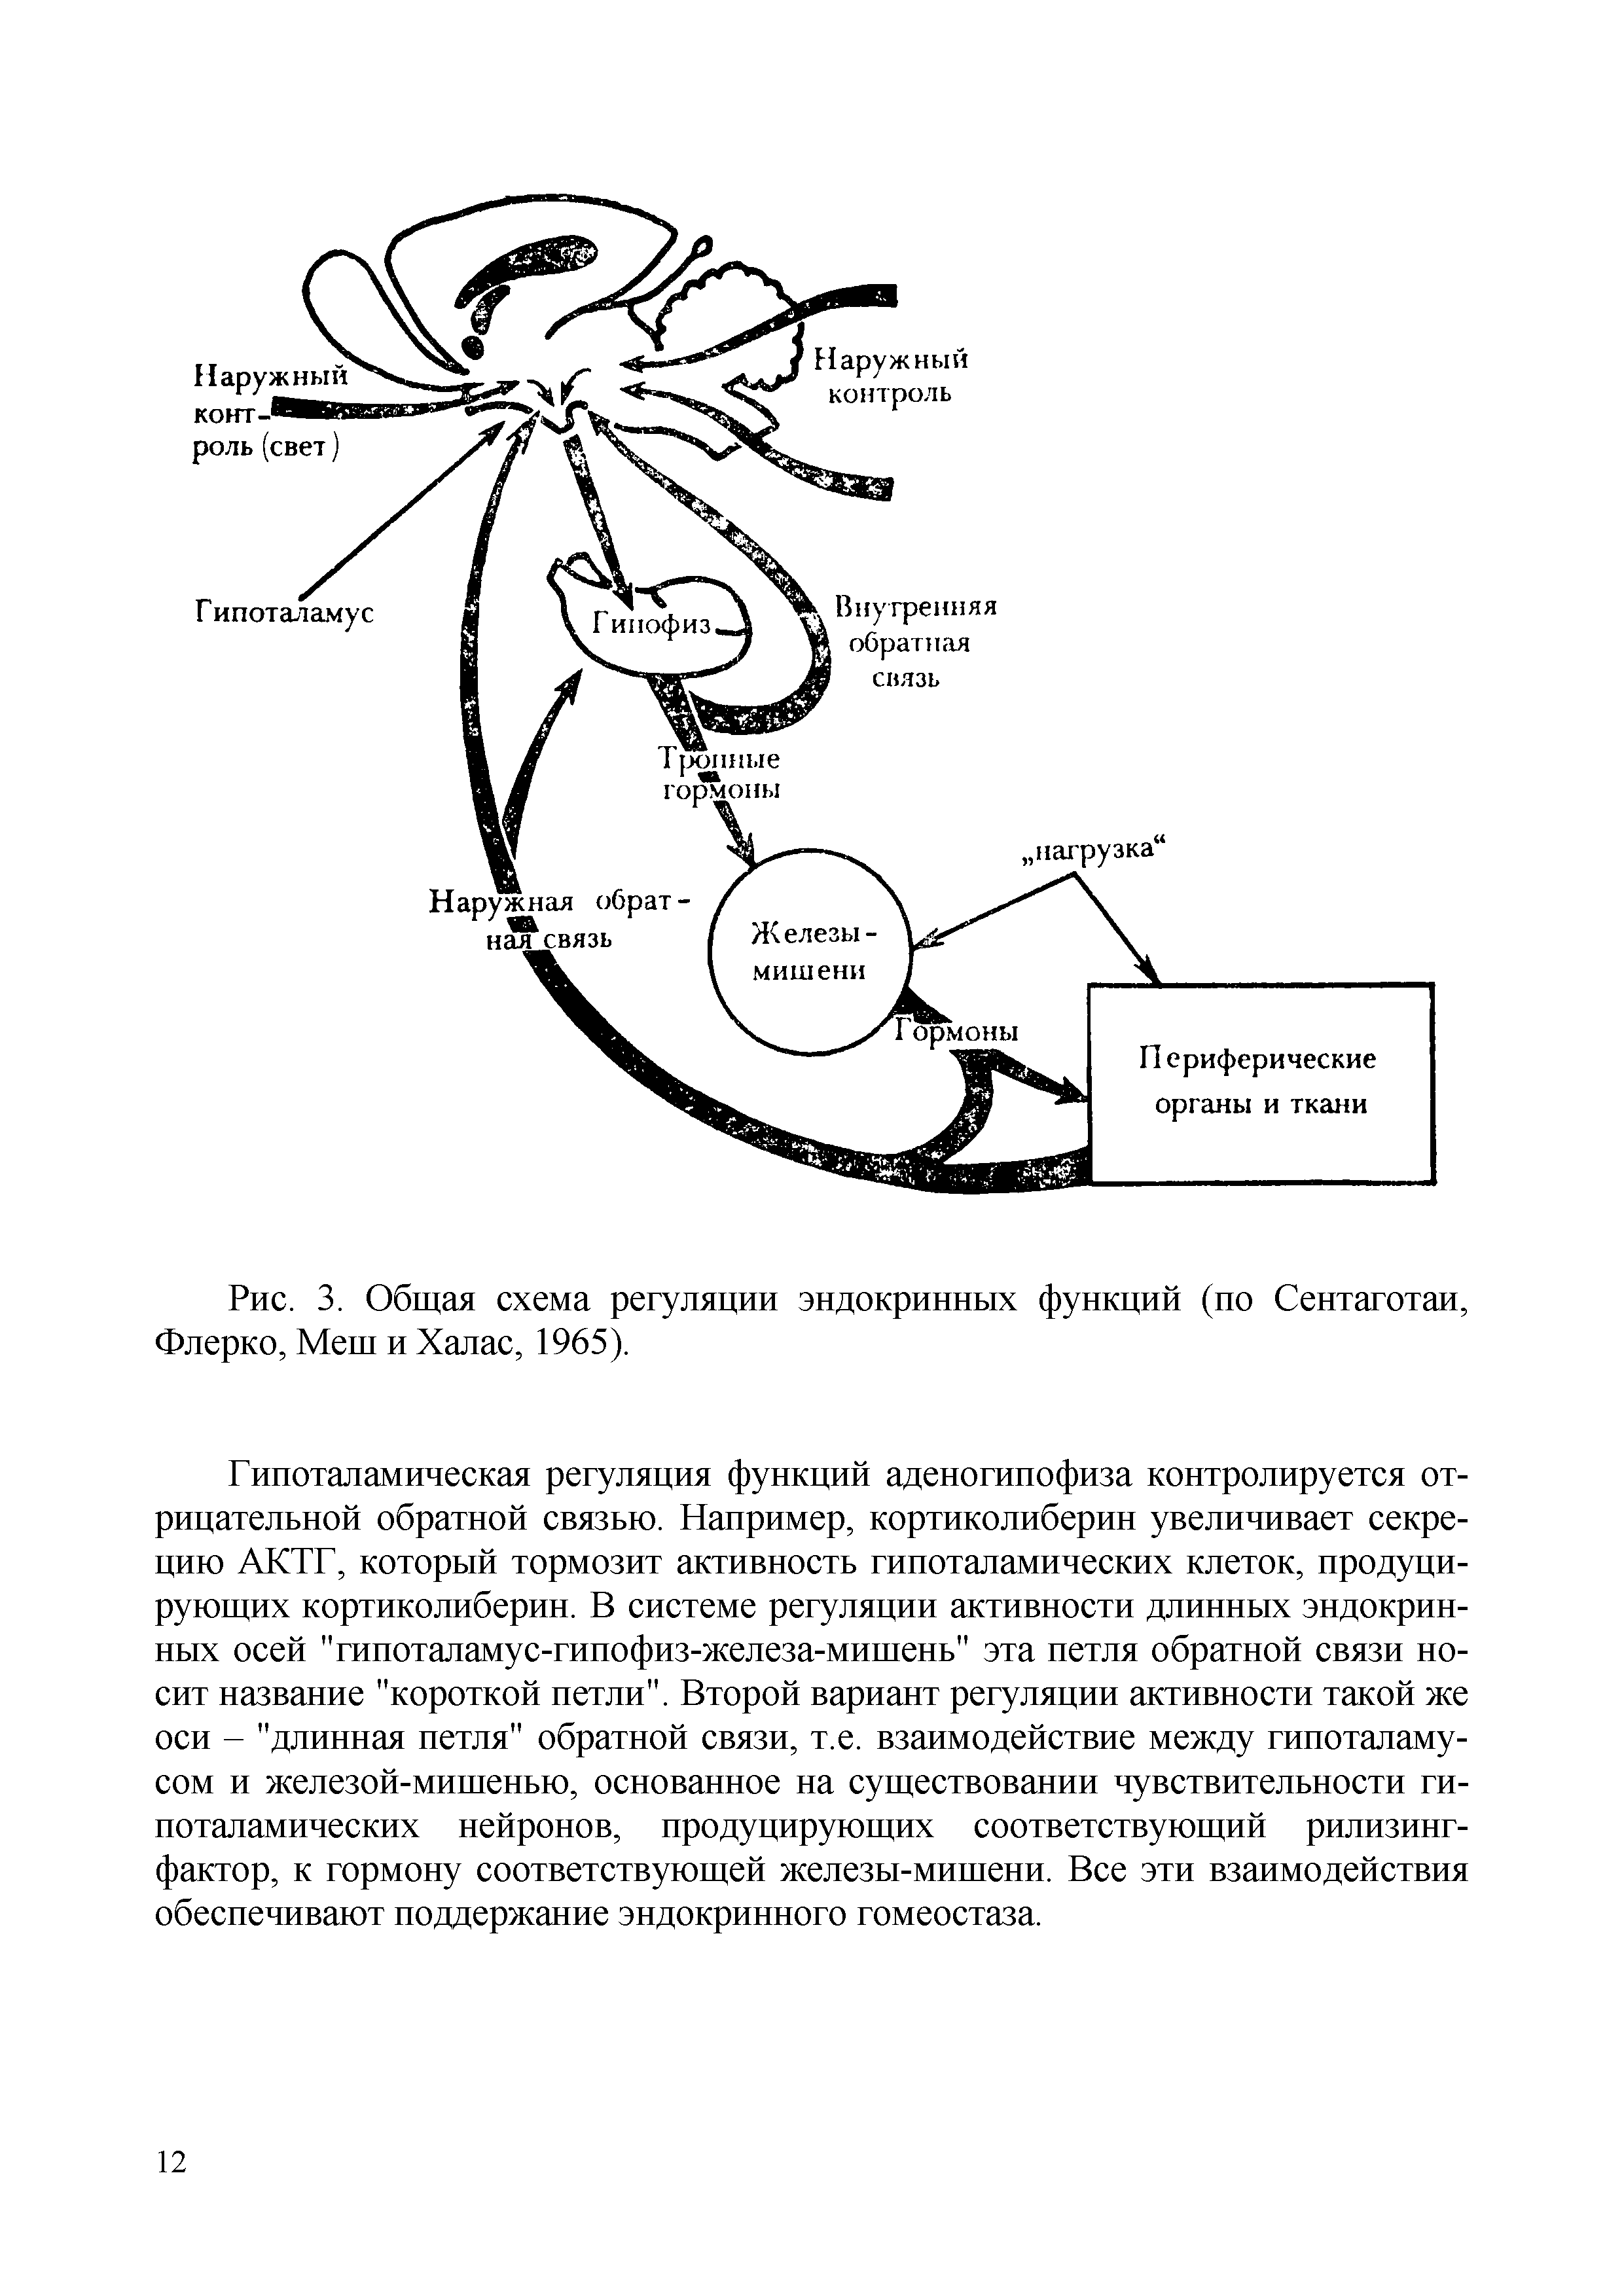 Рис. 3. Общая схема регуляции эндокринных функций (по Сентаготаи, Флерко, Меш и Халас, 1965).